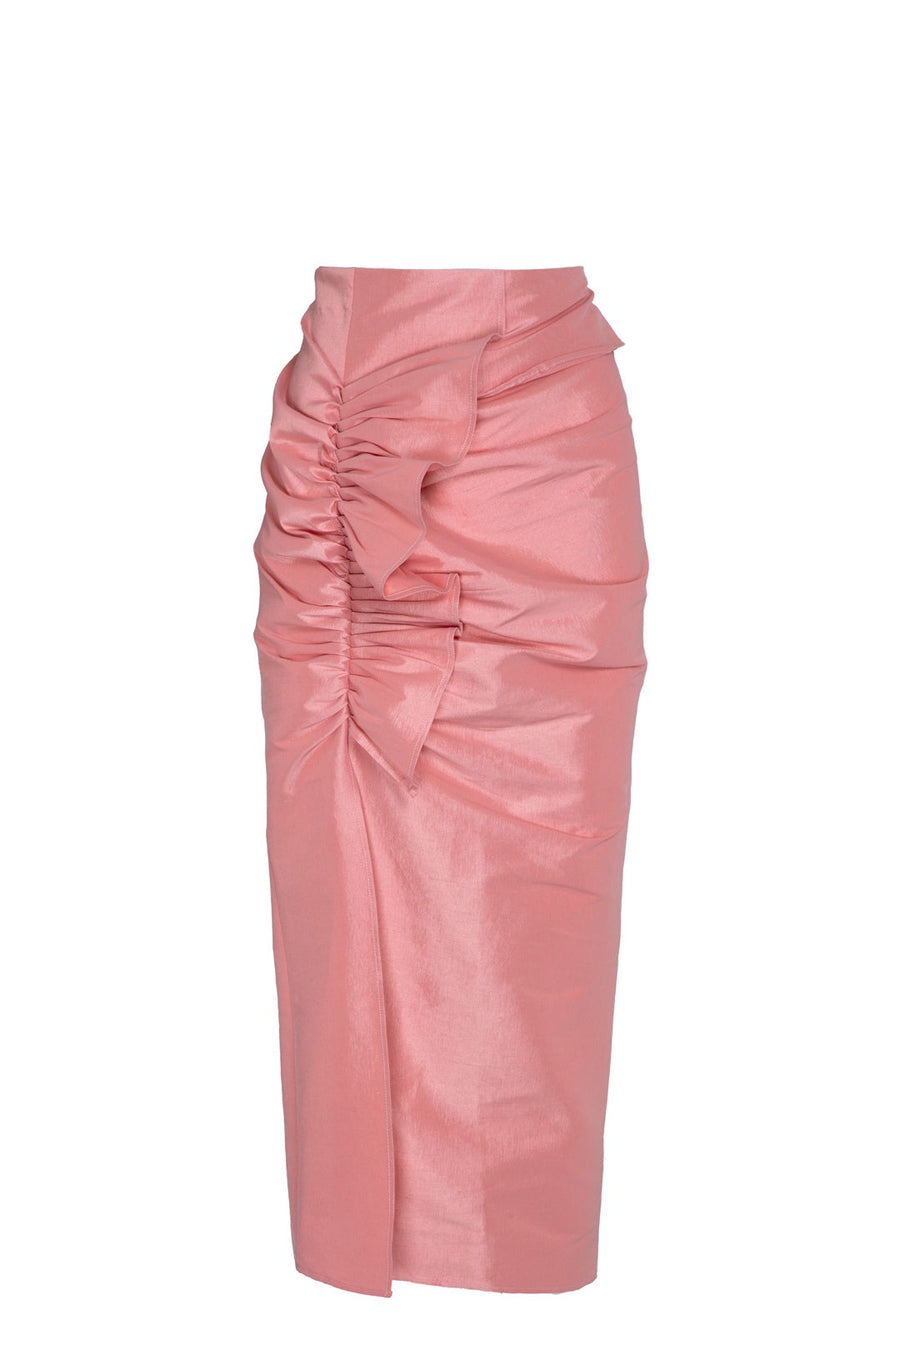 Falda midi rosa con fruncido y volante